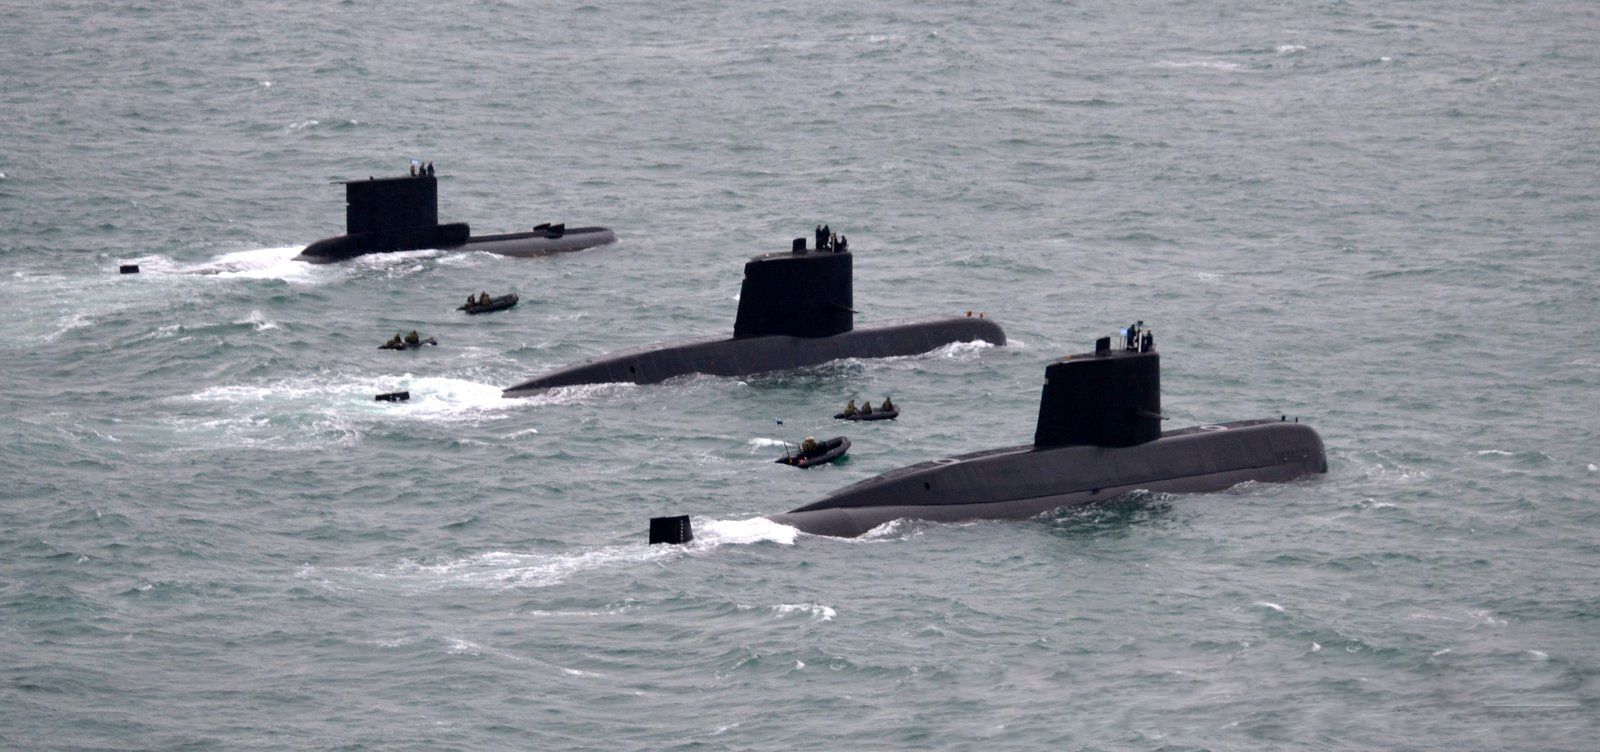 Submarino armada argentina